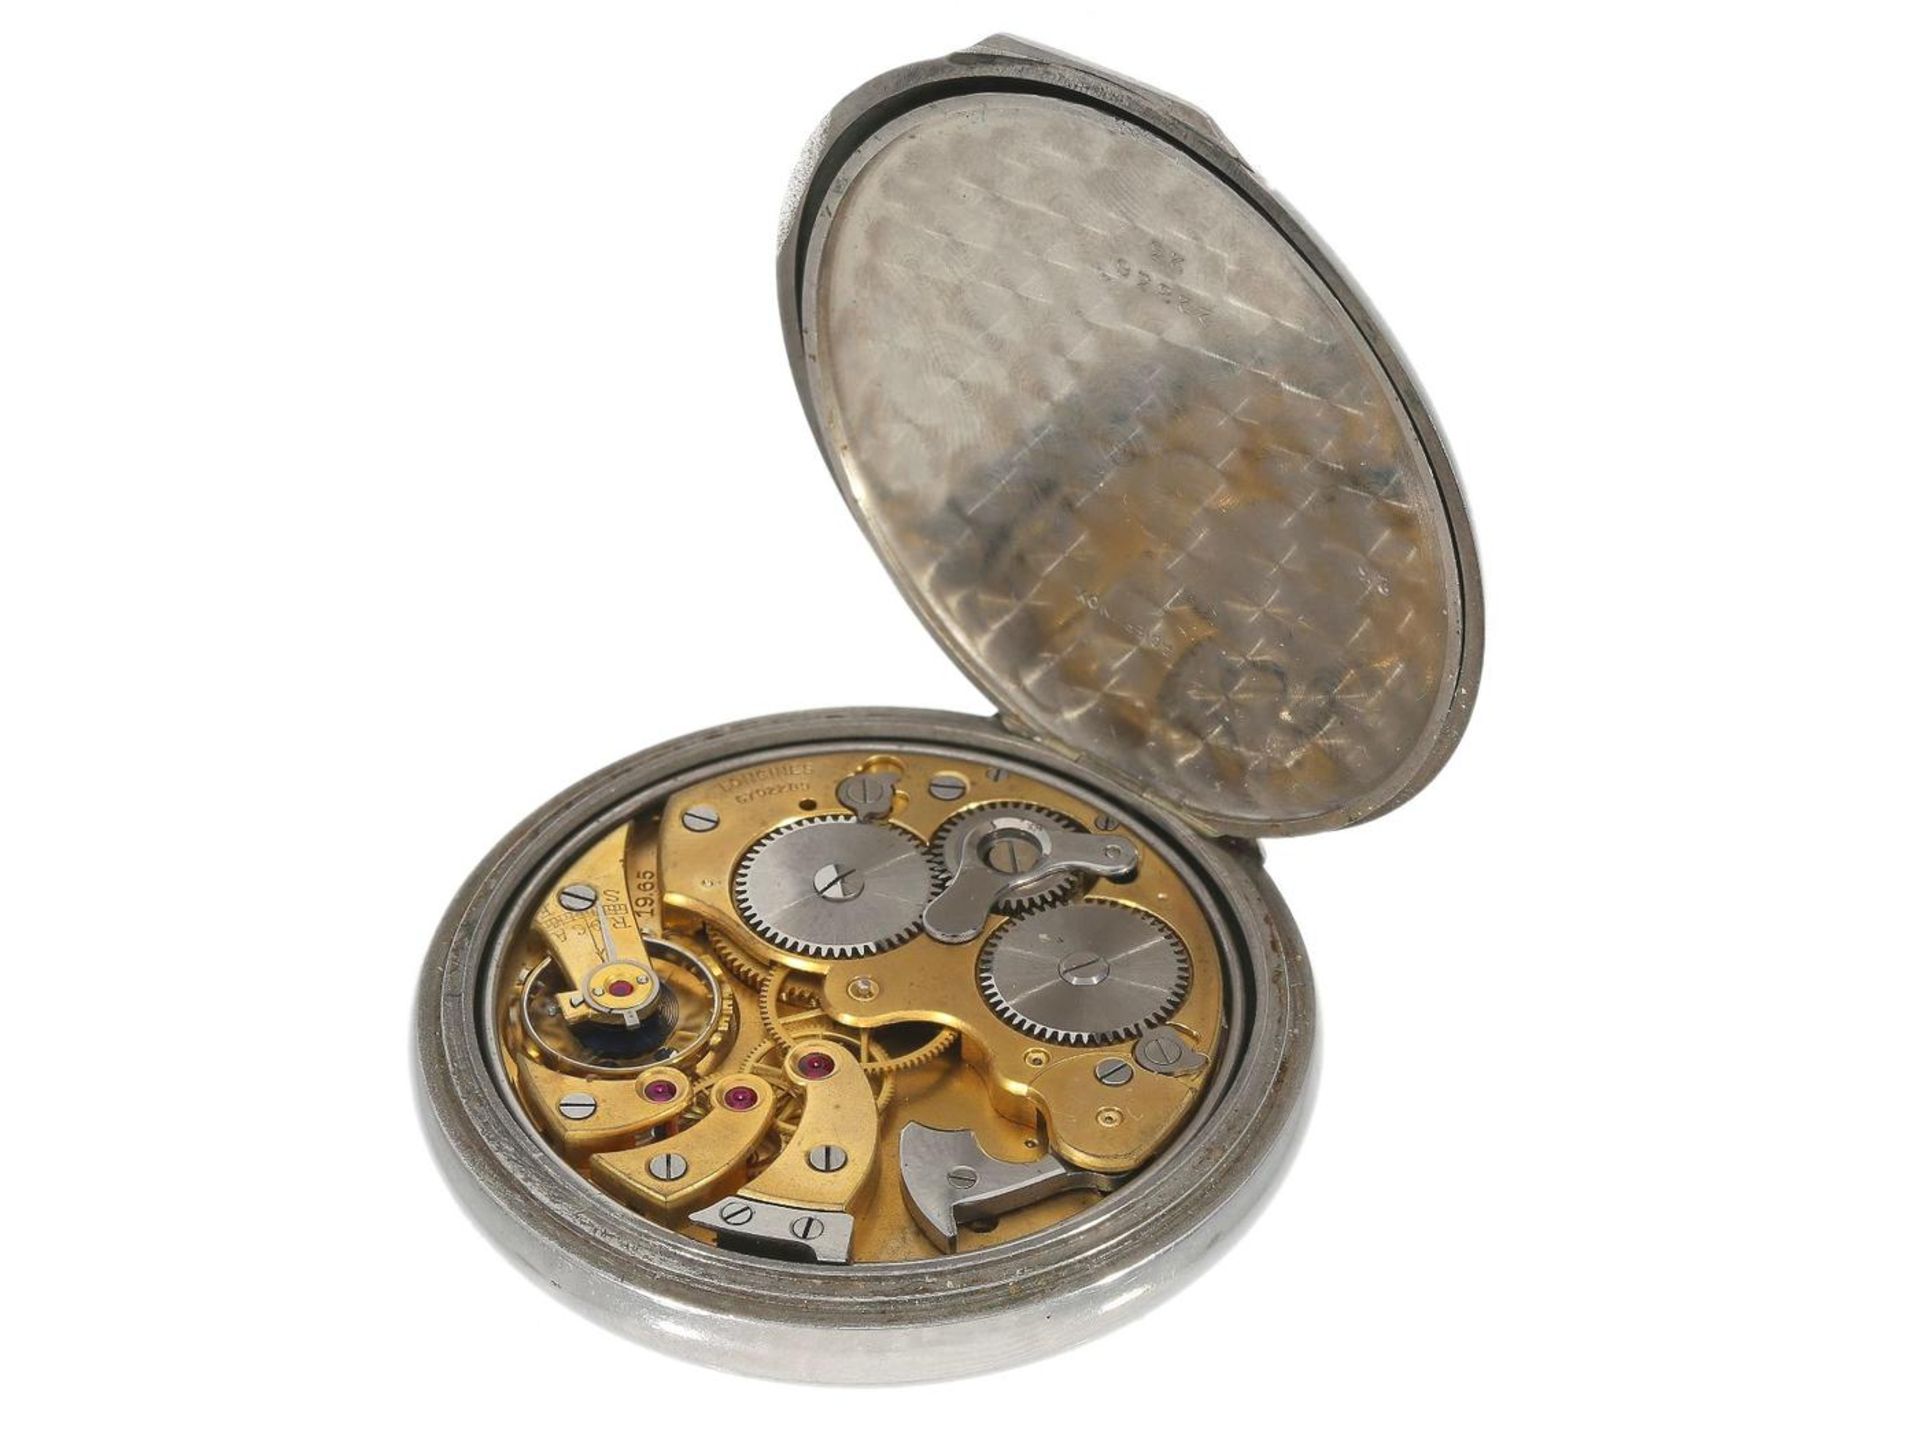 Taschenuhr: sehr seltene Longines-Herrenuhr mit Wecker, Edelstahl, ca. 1930 Ca. Ø50mm, ca. 87g, - Bild 2 aus 2